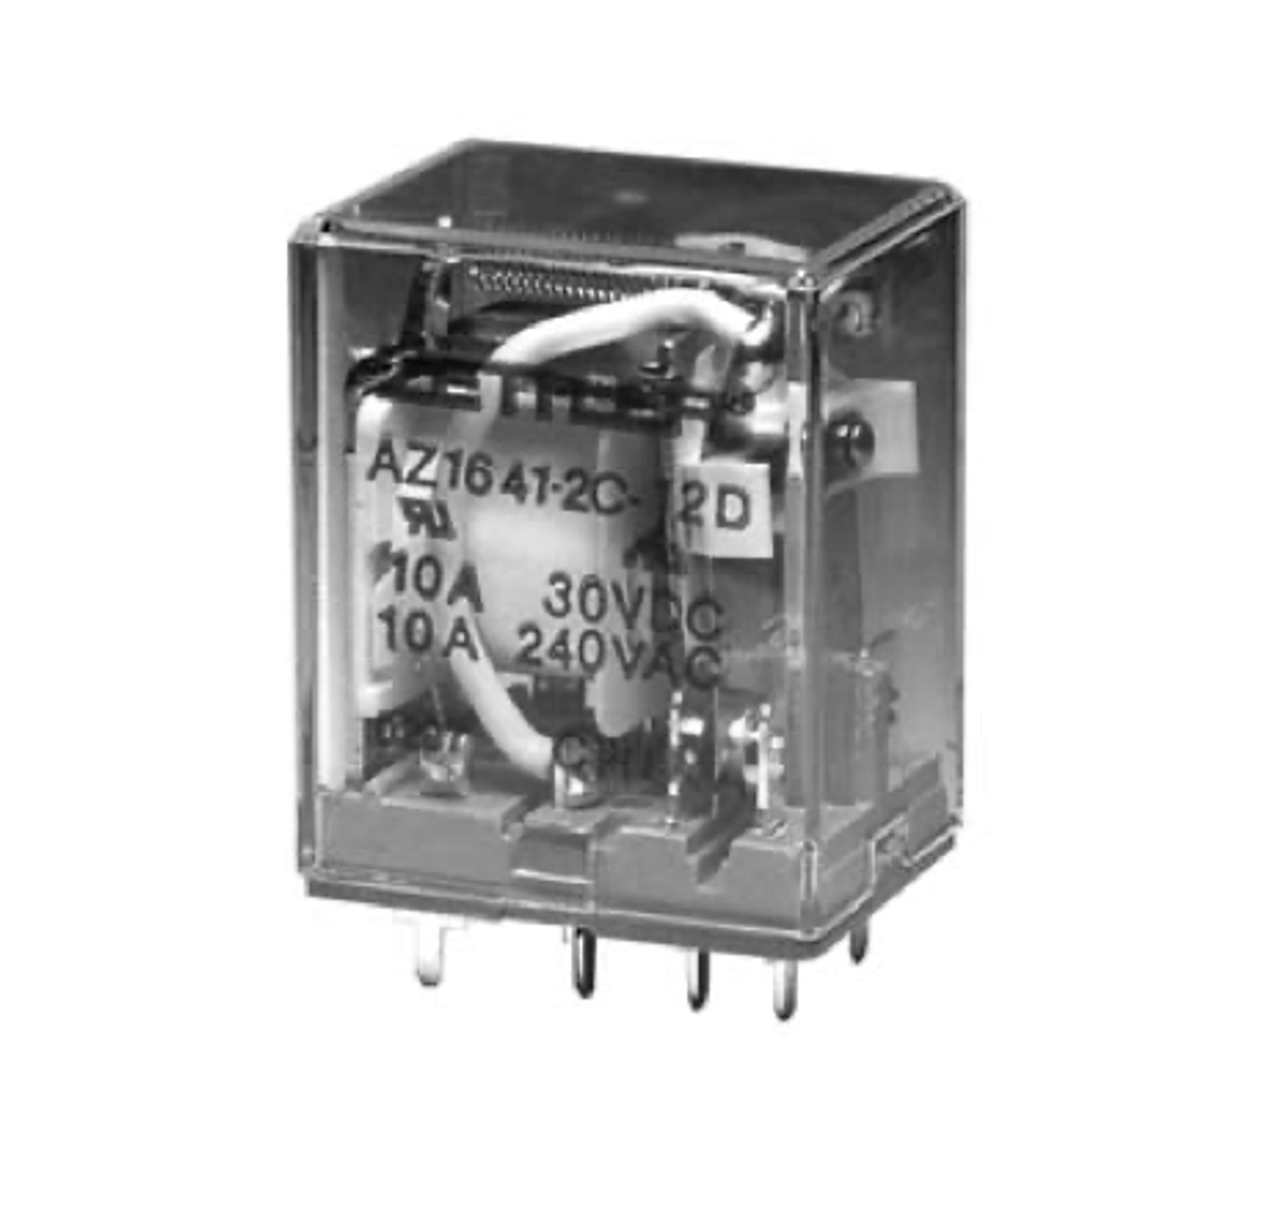 American Zettler AZ1641-4C-110D Power Relay